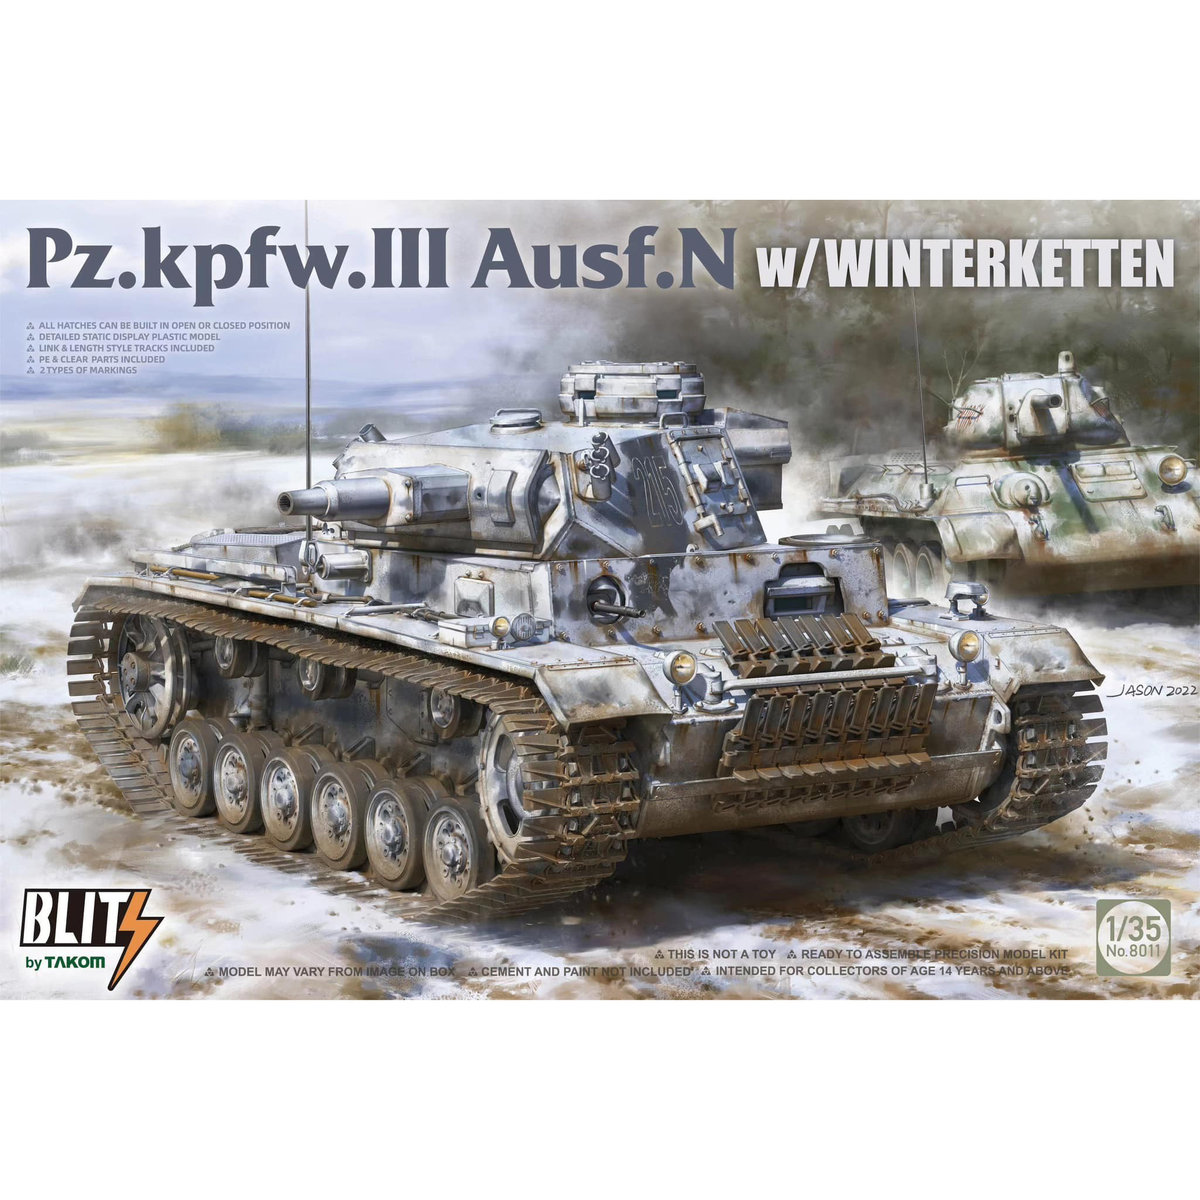 Takom 8011 1:35 Pz.Kpfw. Ill Ausf. N with Winterketten Military Tank Model Kit